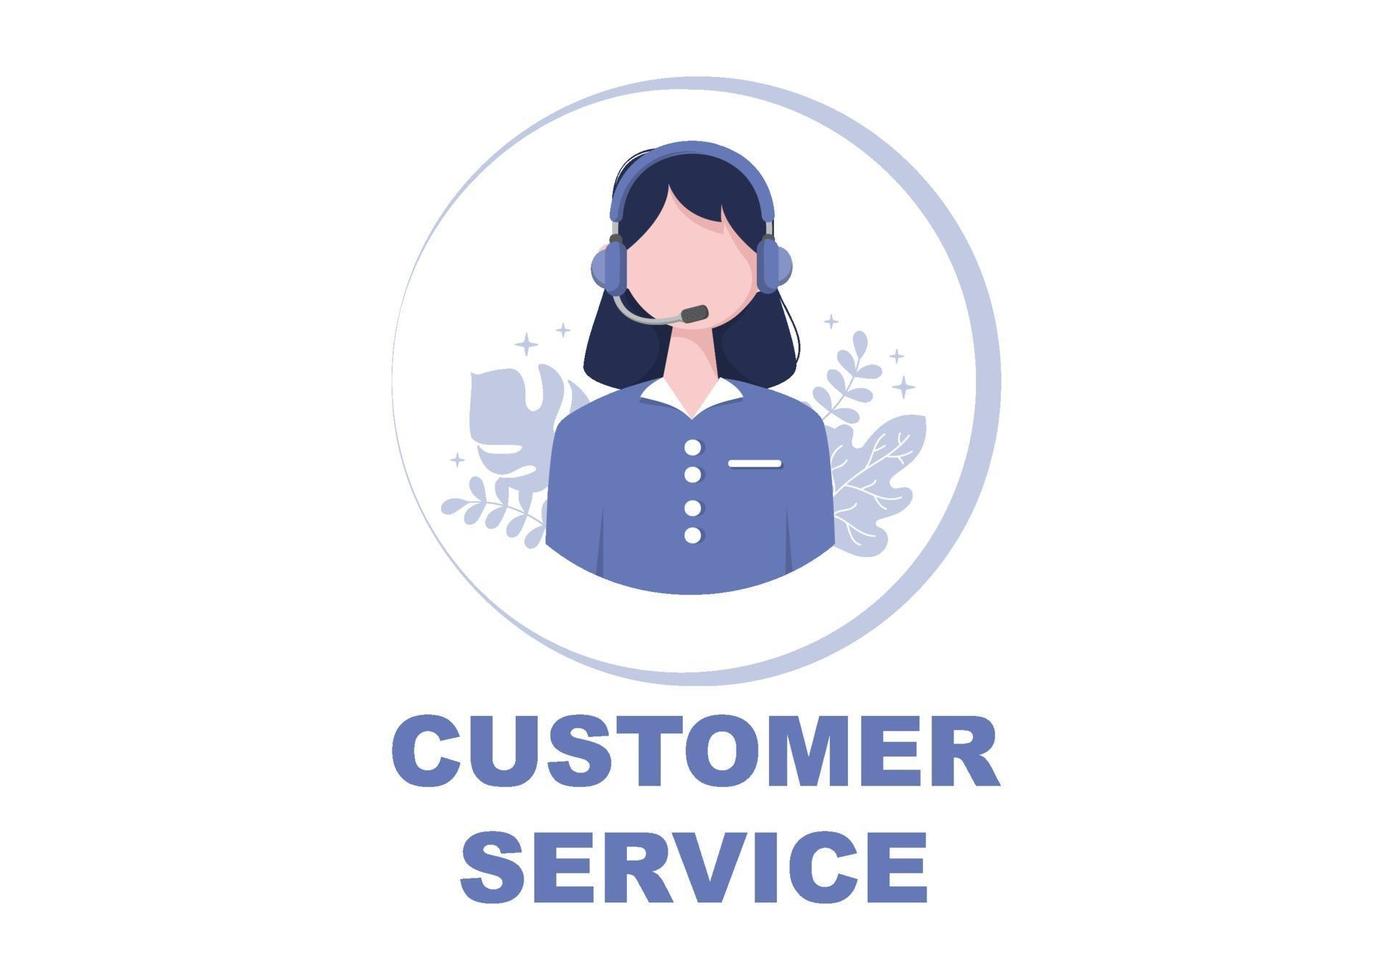 contattaci al servizio clienti per il servizio di assistente personale, consulente personale e rete di social media. illustrazione vettoriale